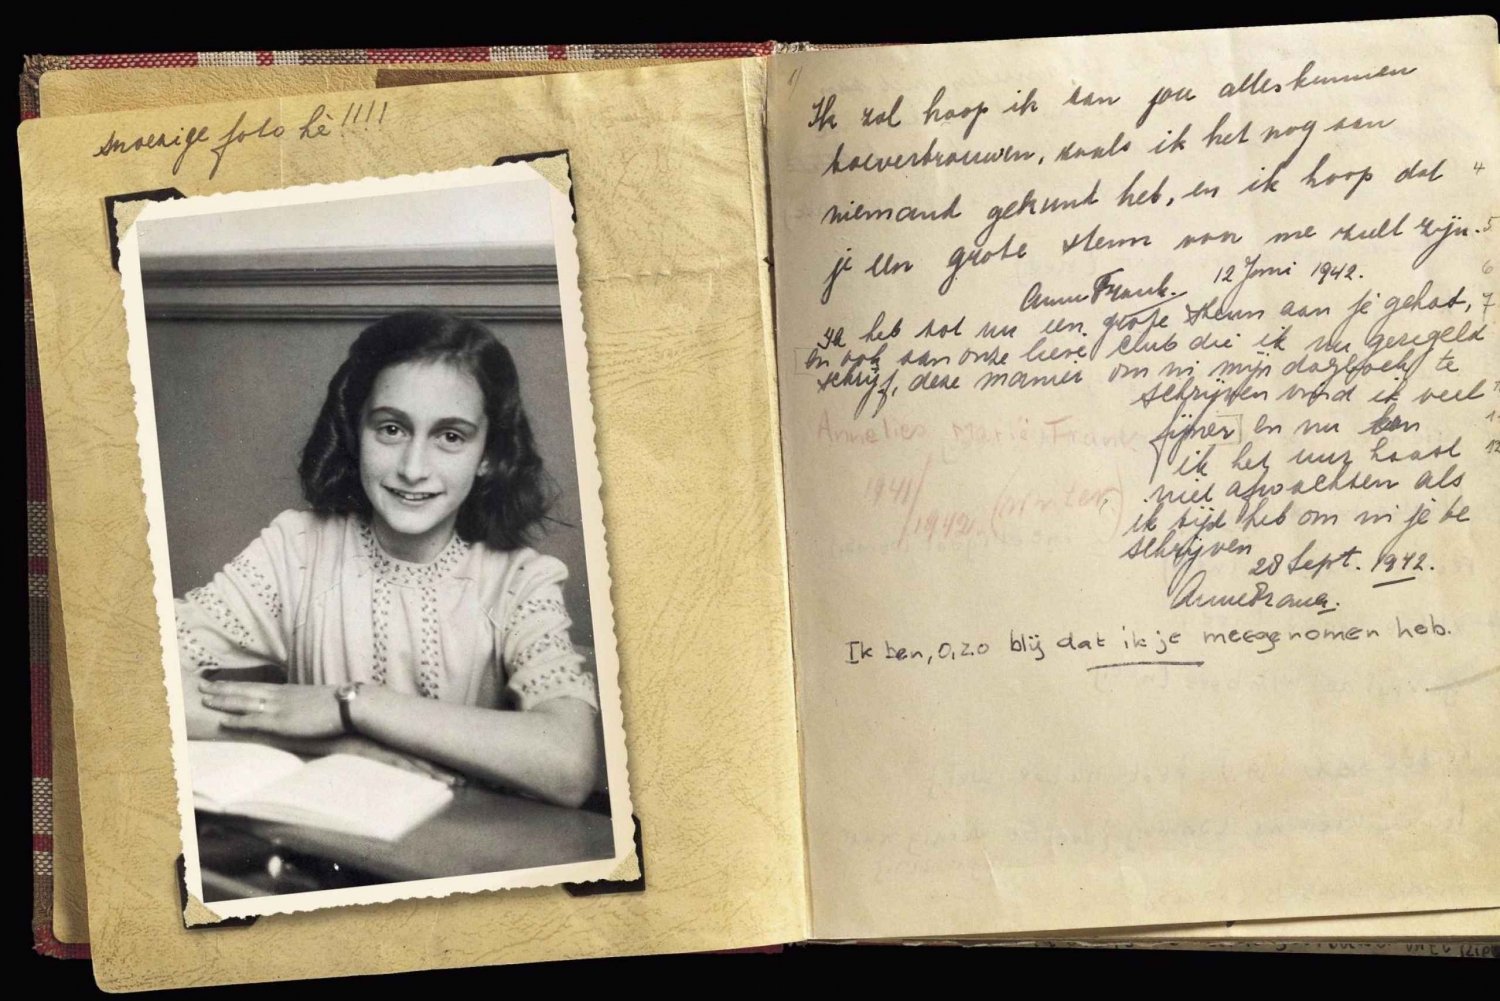 Amsterdam: Privat omvisning i Anne Franks og det jødiske kvarteret